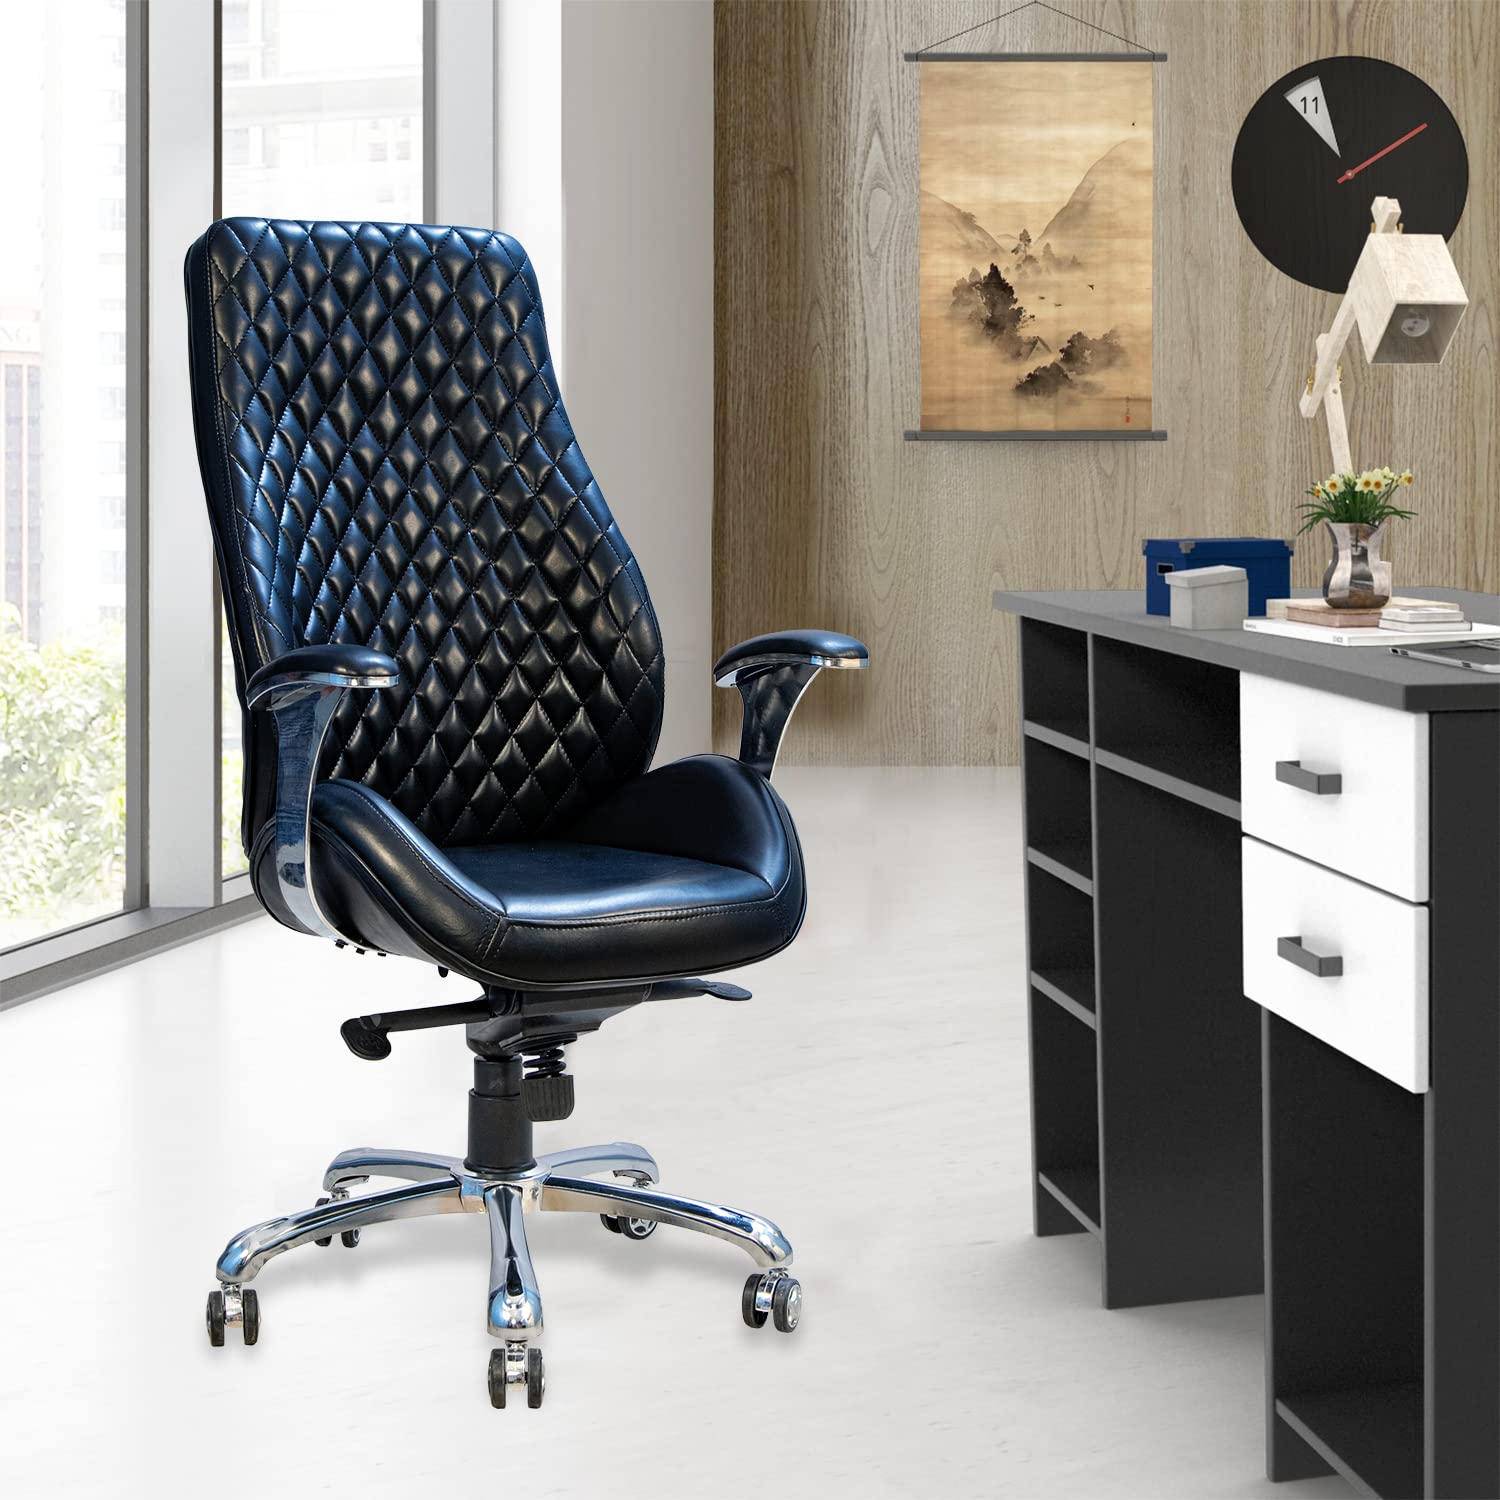 Kepler Brooks Atlas Premium Leatherette High Back Ergonomic Office Chair